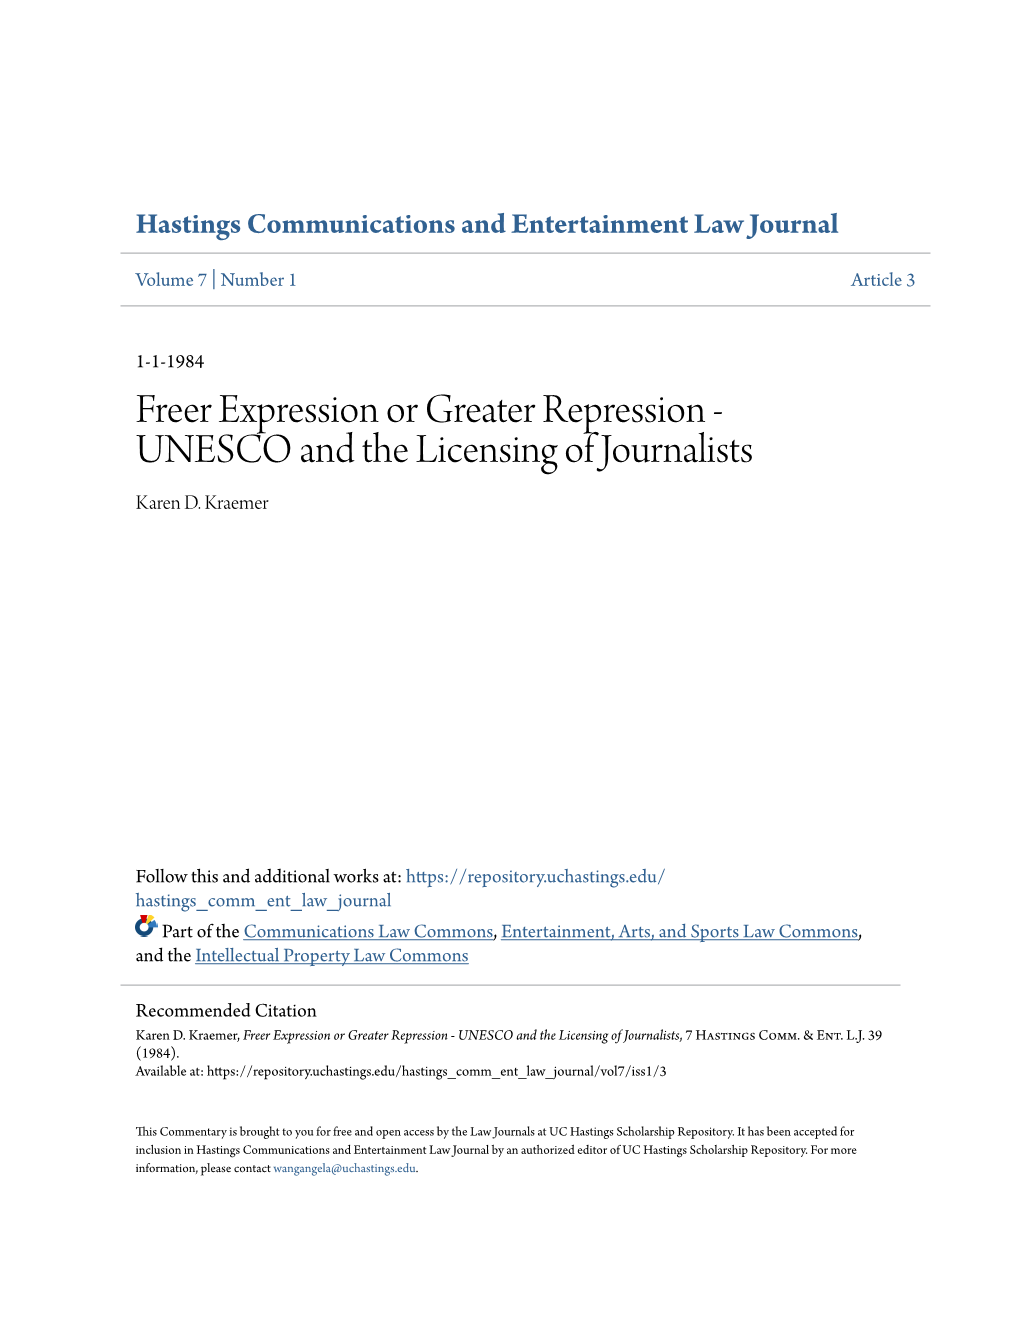 UNESCO and the Licensing of Journalists Karen D